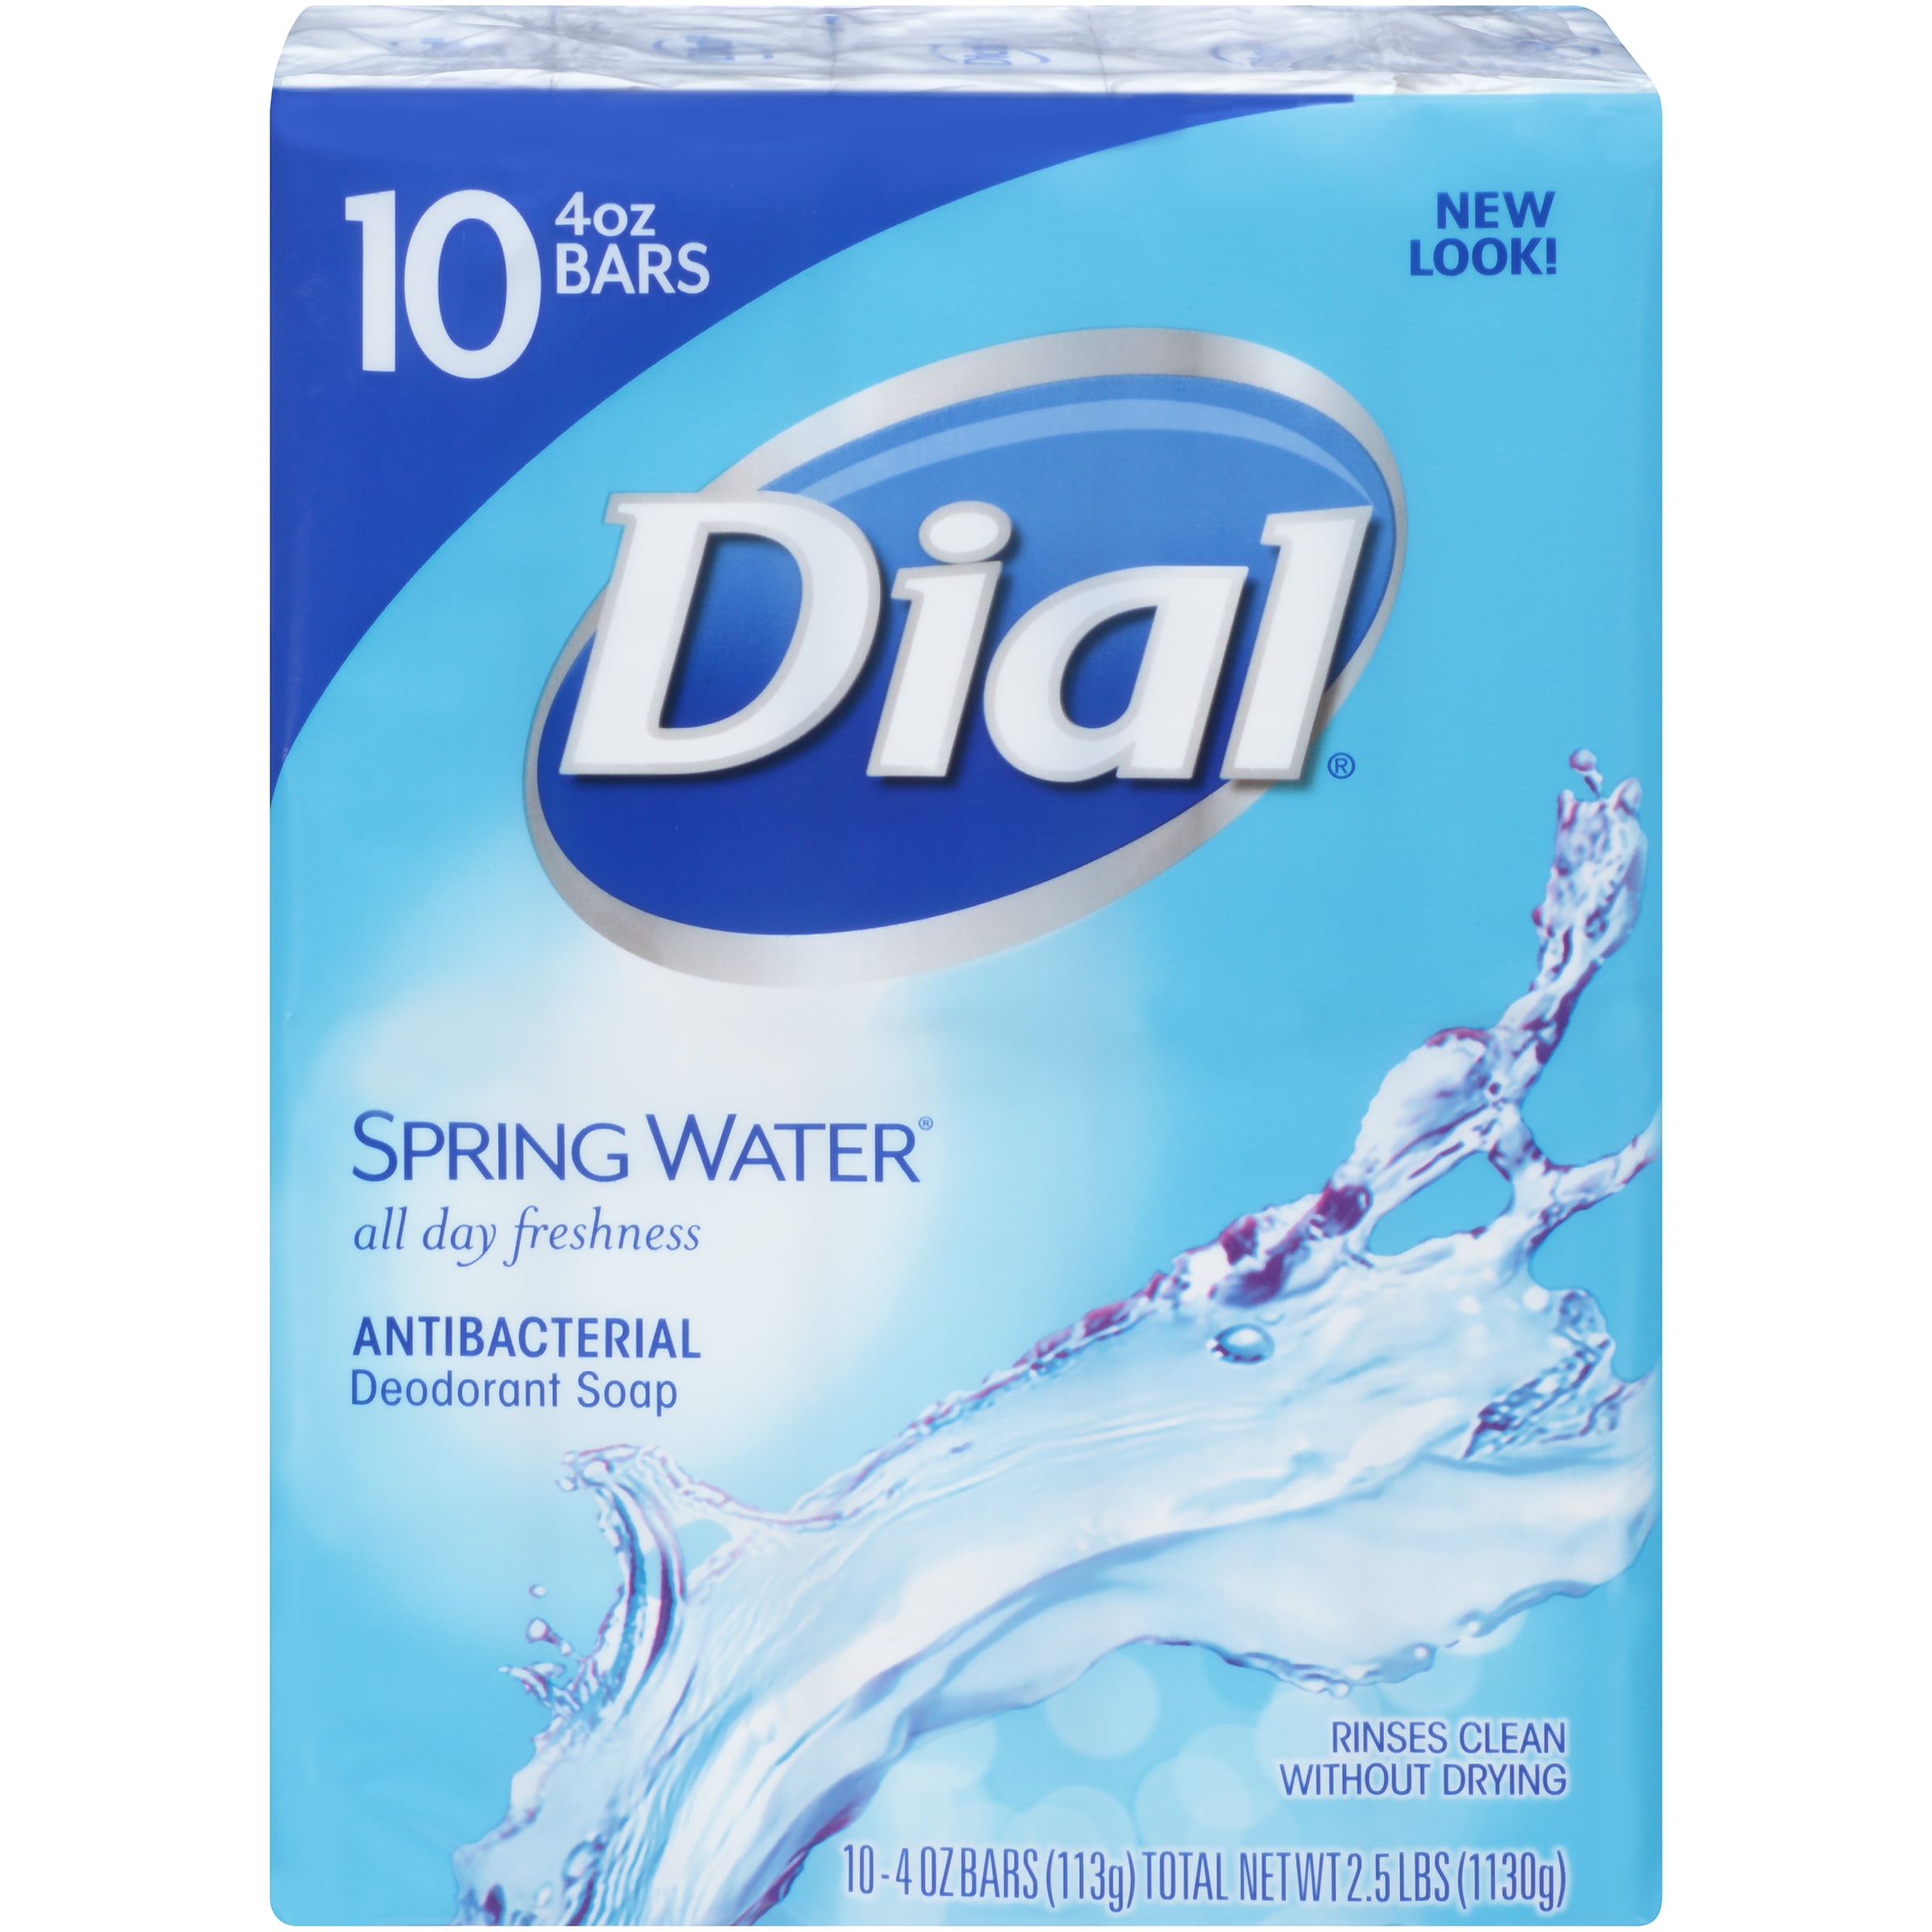 Dial Antibacterial Deodorant Bar Soap, Spring Water, 4 oz, 10 Bars